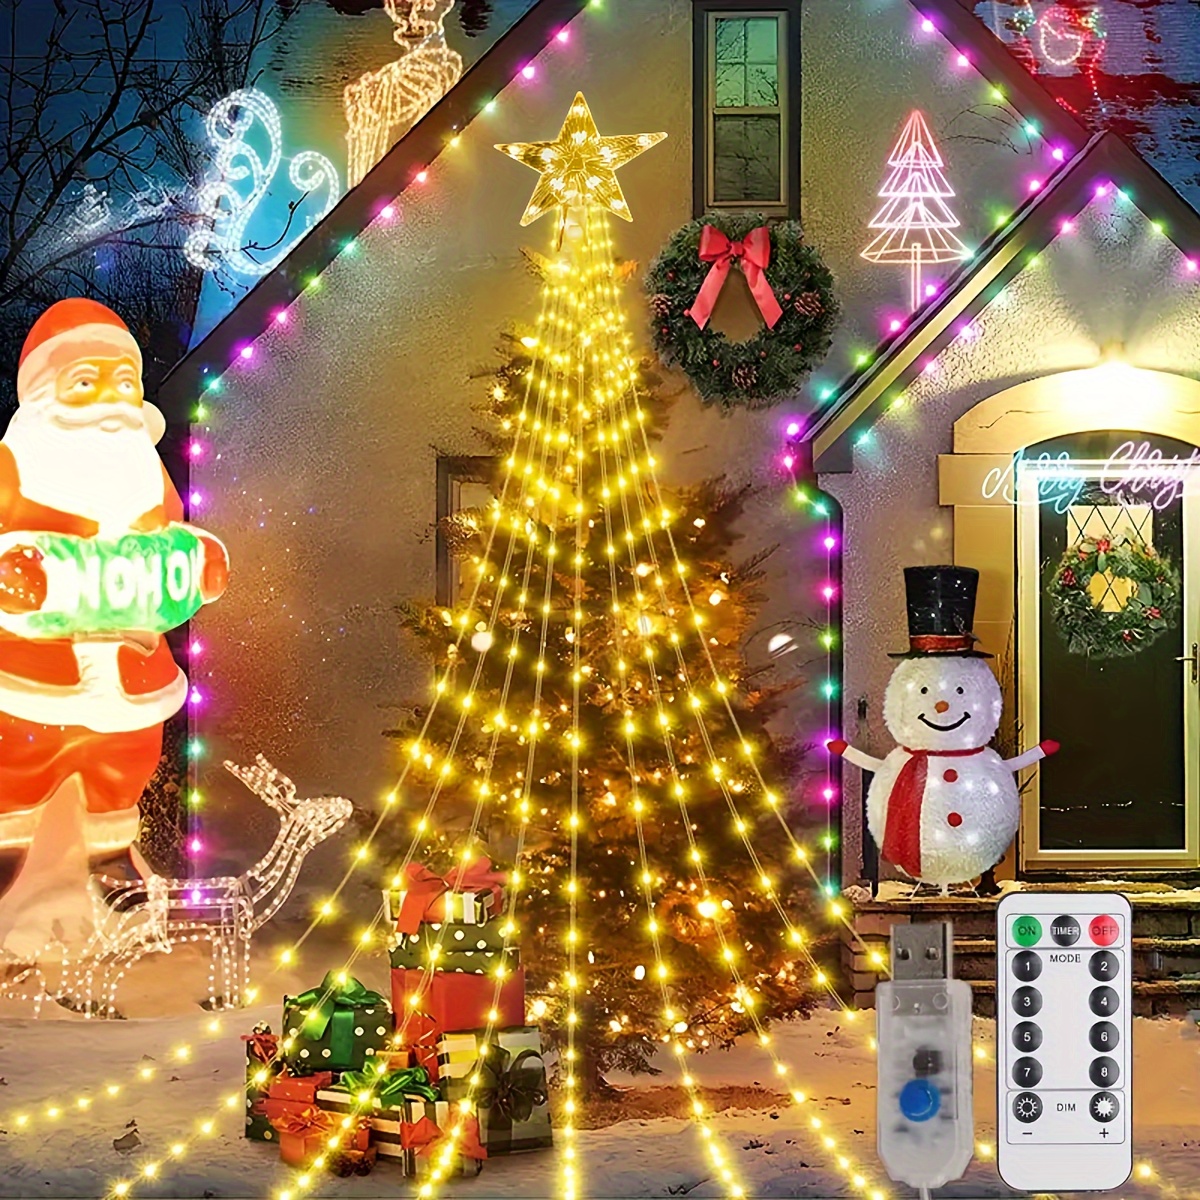 Decoration Noel d'extérieur, Guirlande Lumineuse Exterieure Blanc Chaud et  RGB, Decoration Noel Exterieur avec Télécommande et Application, 8 Modes+4